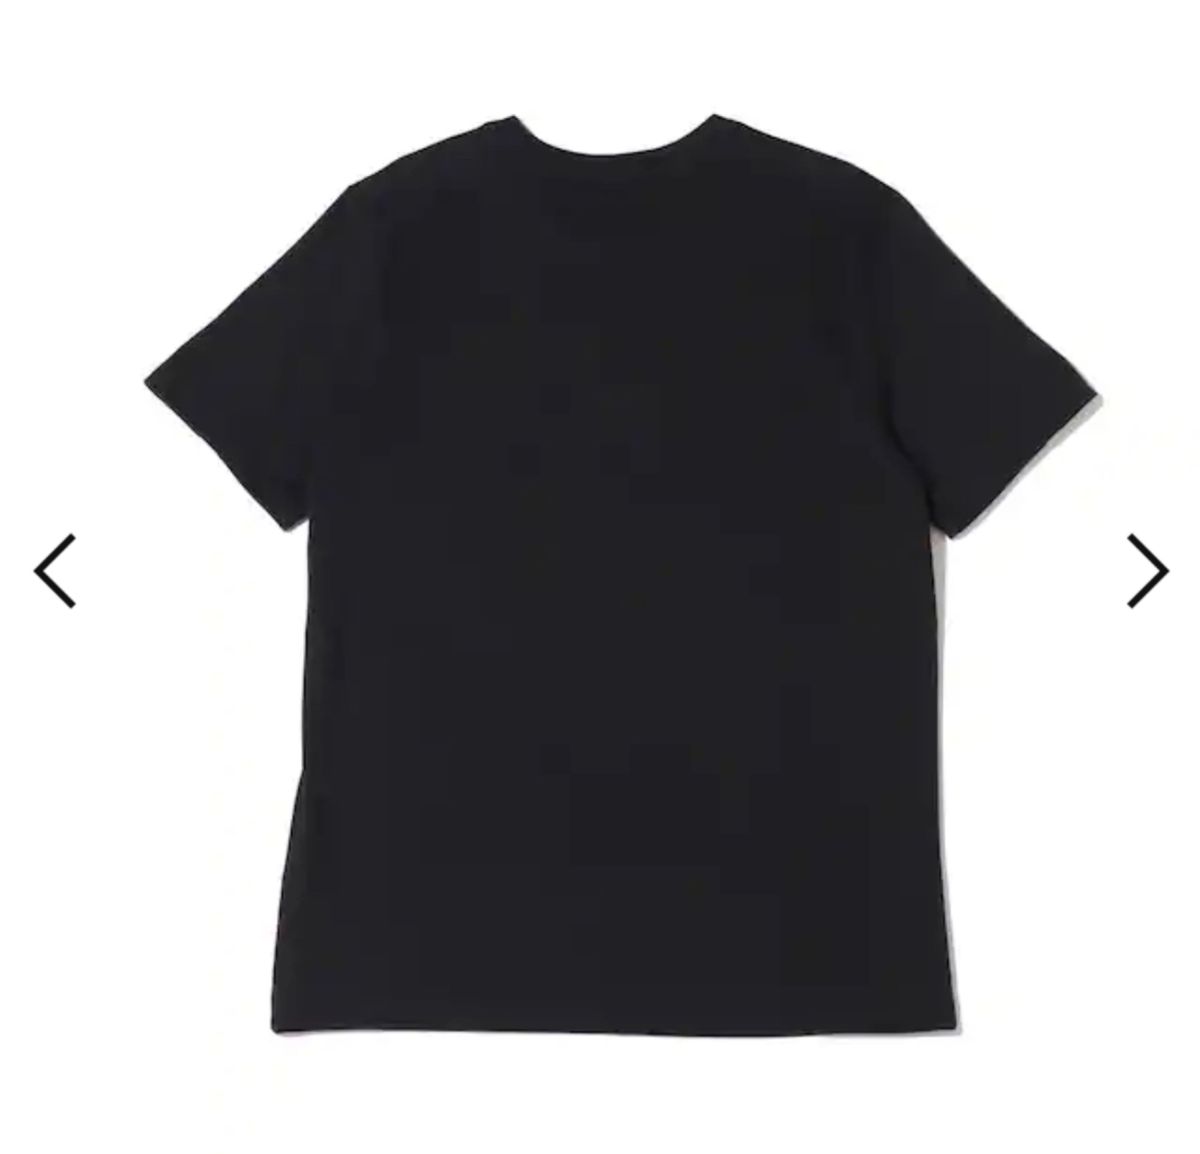 限定貴重品　パリSG×ジョーダン ワールドマークTシャツ XL 新品未使用 NIKE ナイキ